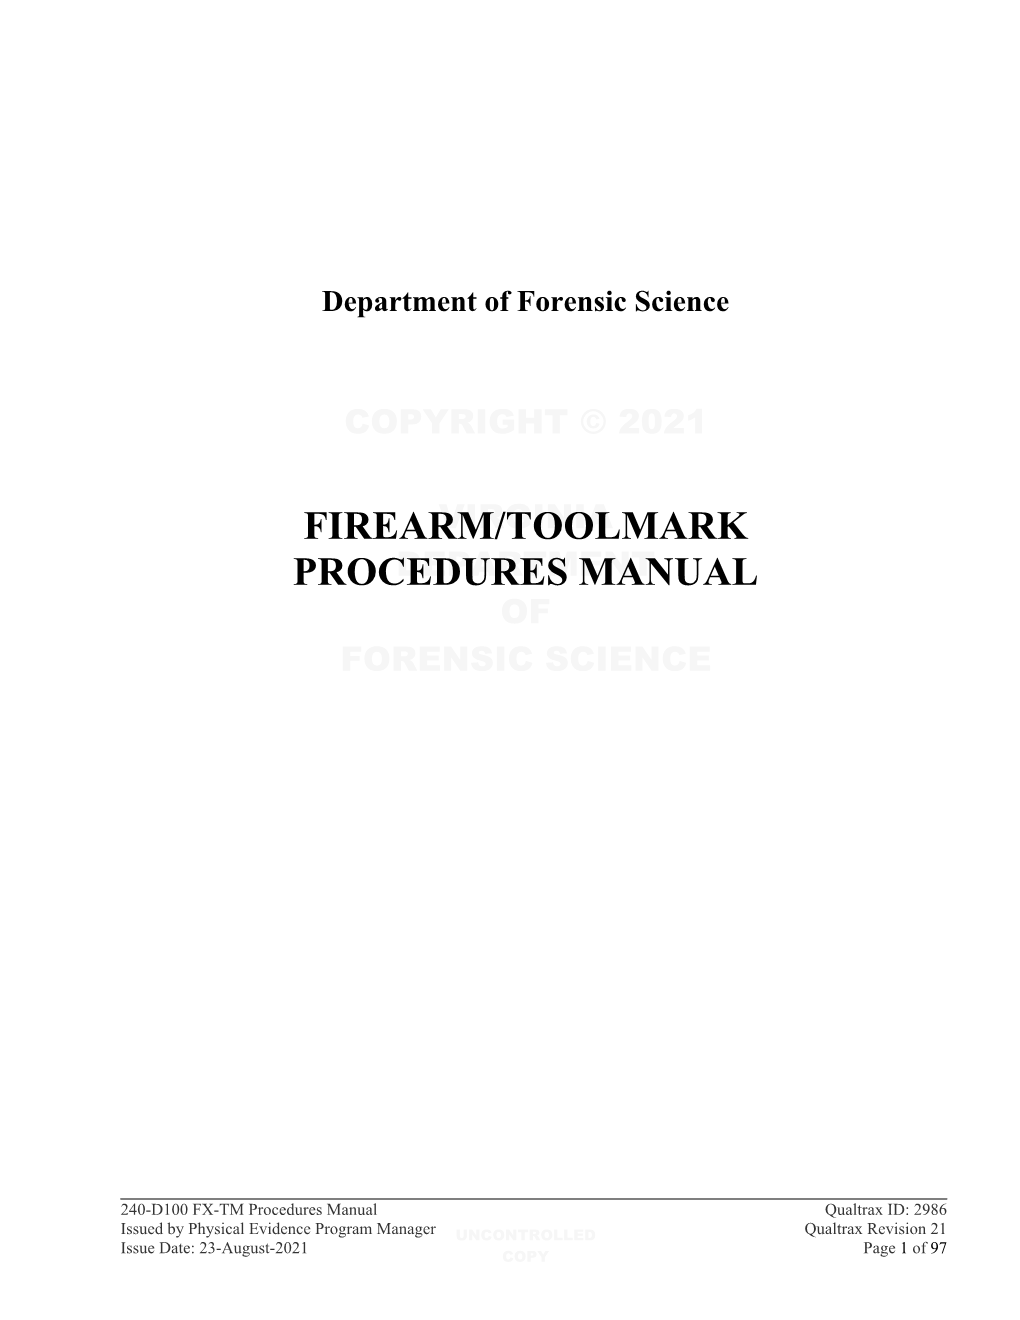 240-D100 FX-TM Procedures Manual